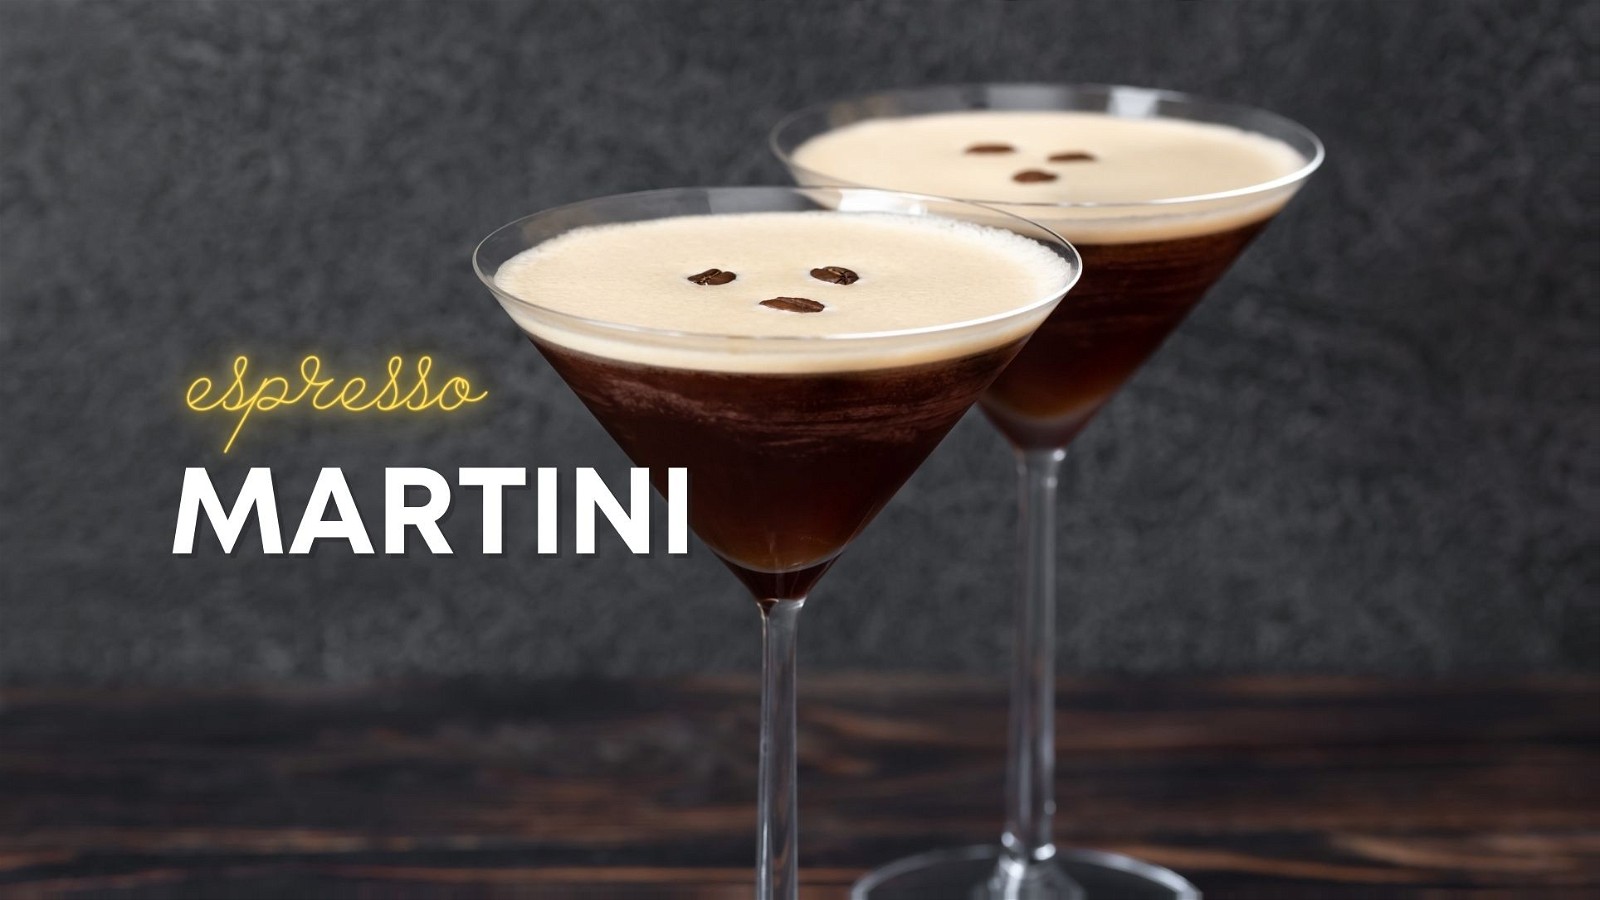 Image of Classic Espresso Martini